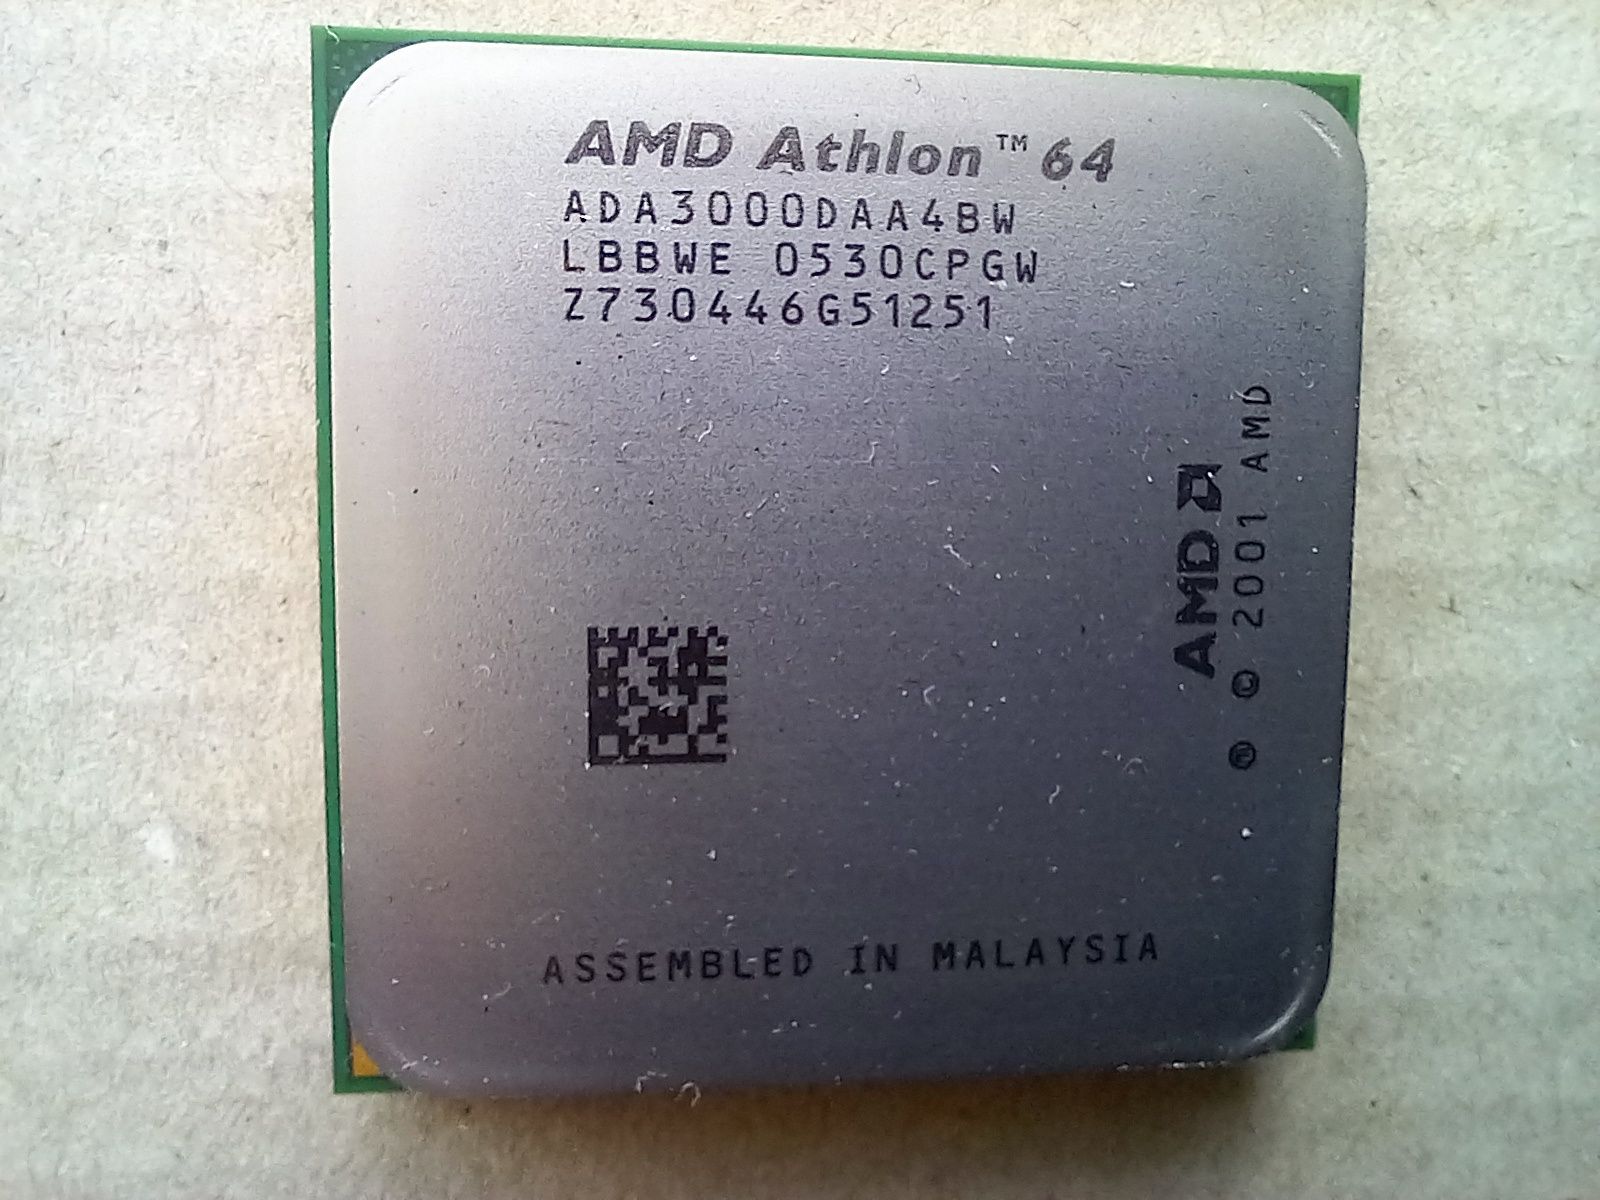 Procesor AMD Athlon 64 ADA3000DAA4BW